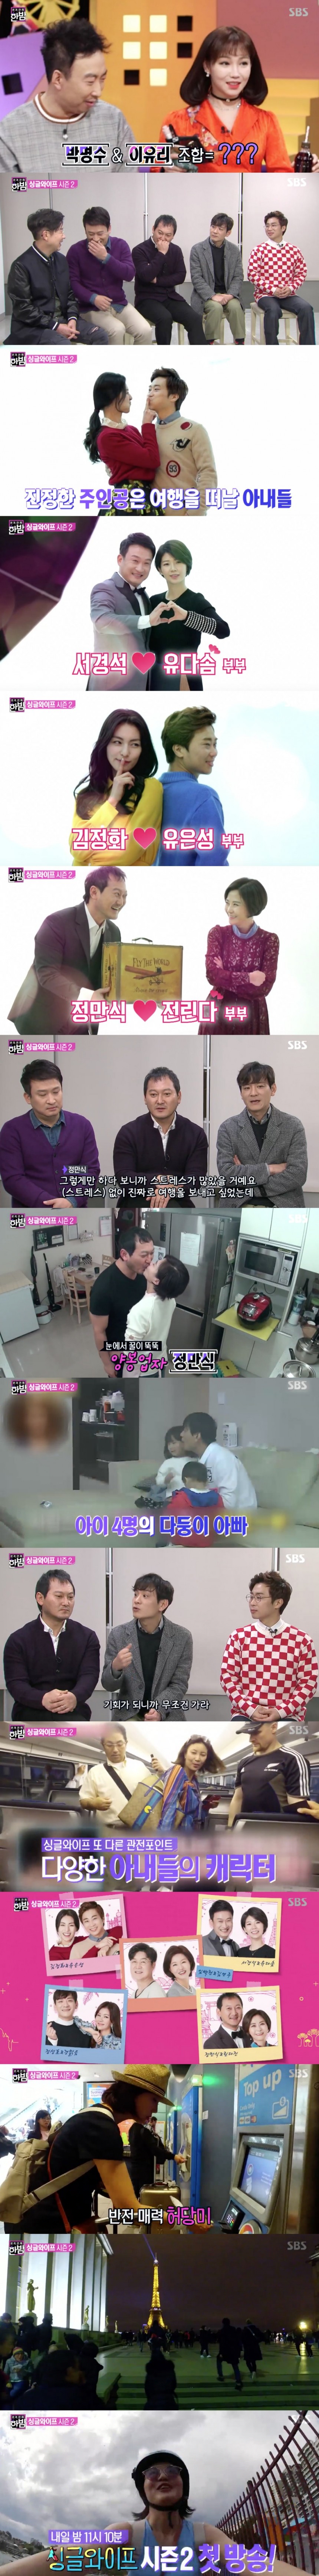 SBS ‘본격연예 한밤’ 방송 캡쳐 